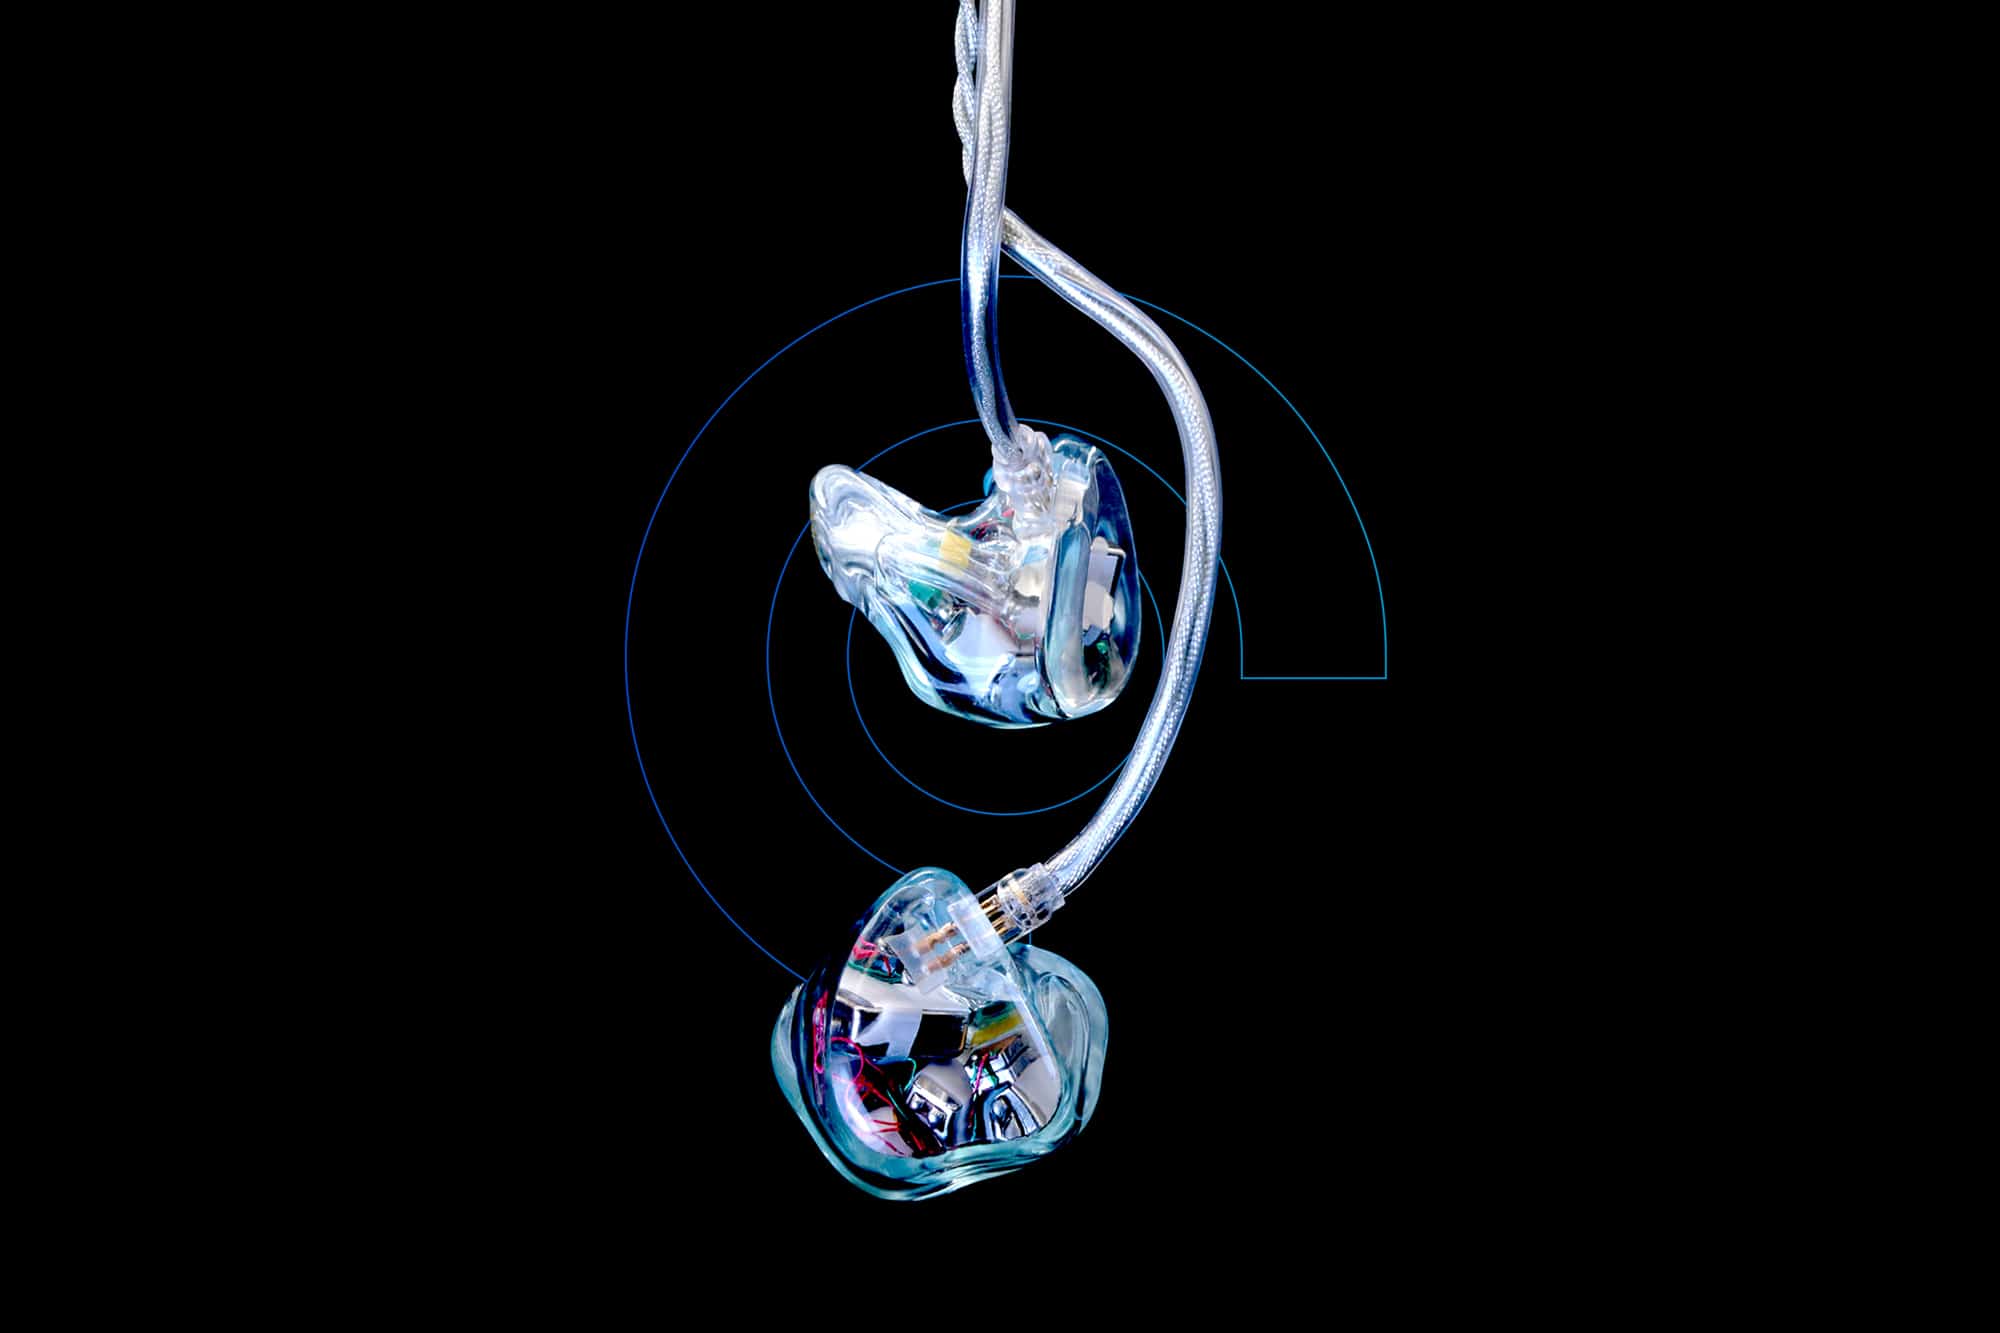 InEarz Audio  Custom & Universal In-Ear Monitors